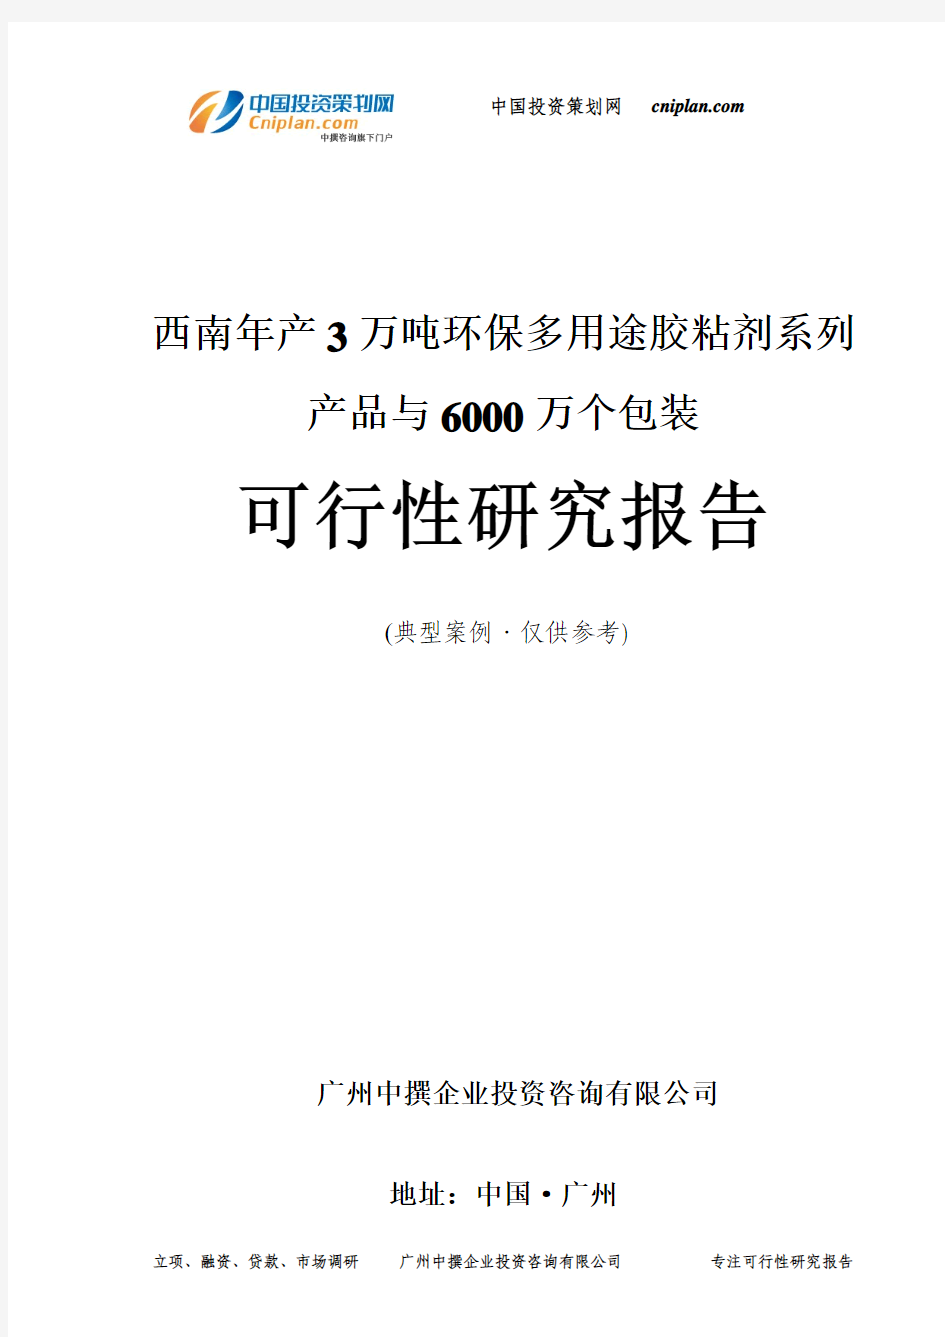 西南年产3万吨环保多用途胶粘剂系列产品与6000万个包装可行性研究报告-广州中撰咨询